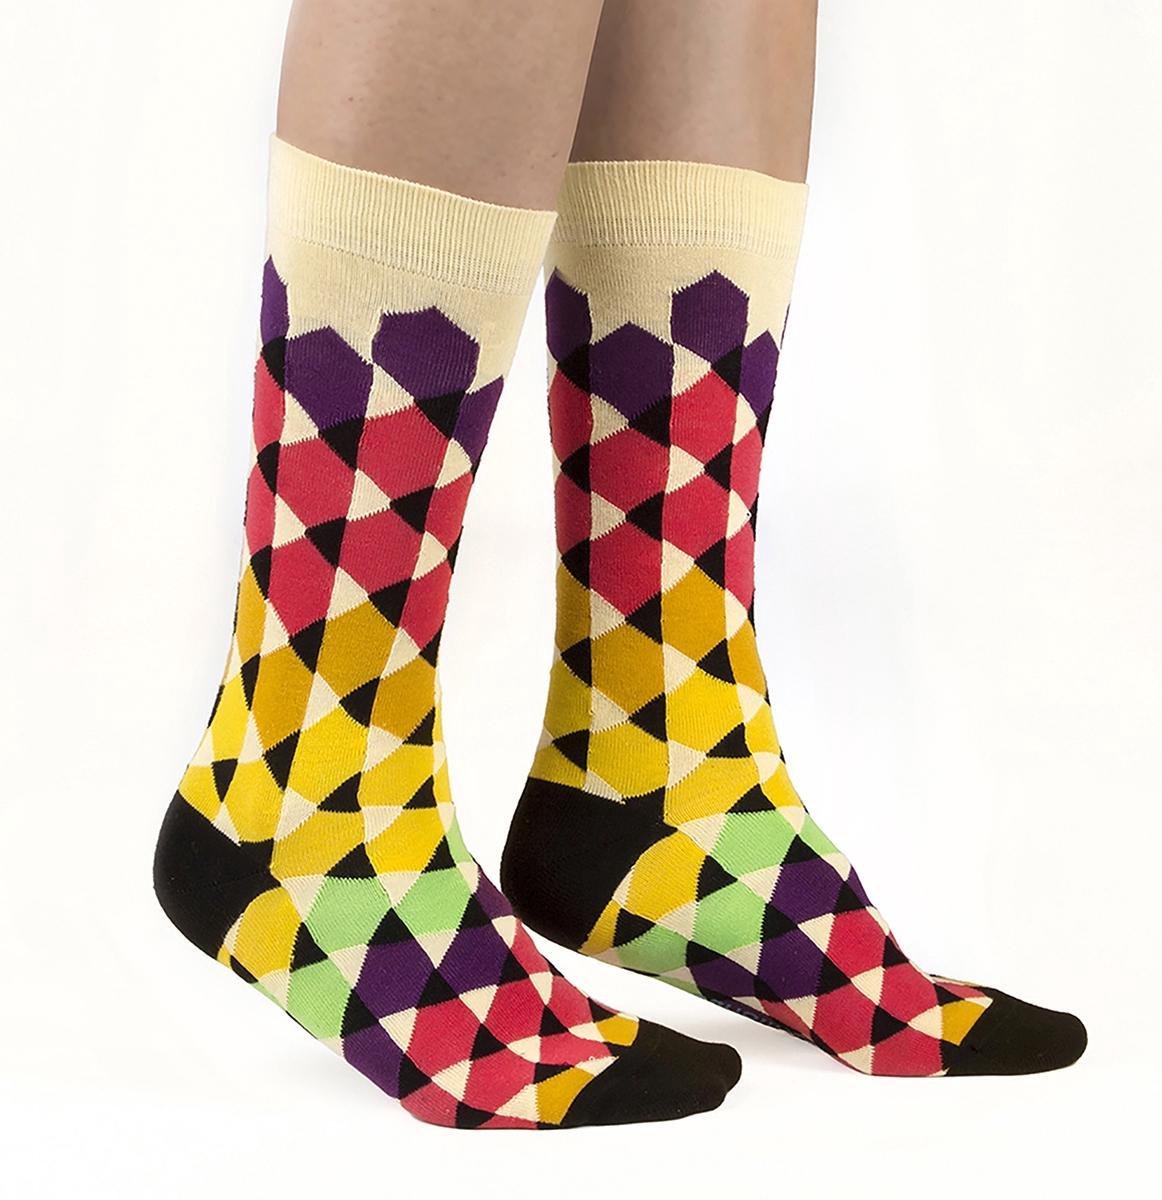 Ballonet Socks - Play / maat 41/46 - vrolijke kleurrijke sokken